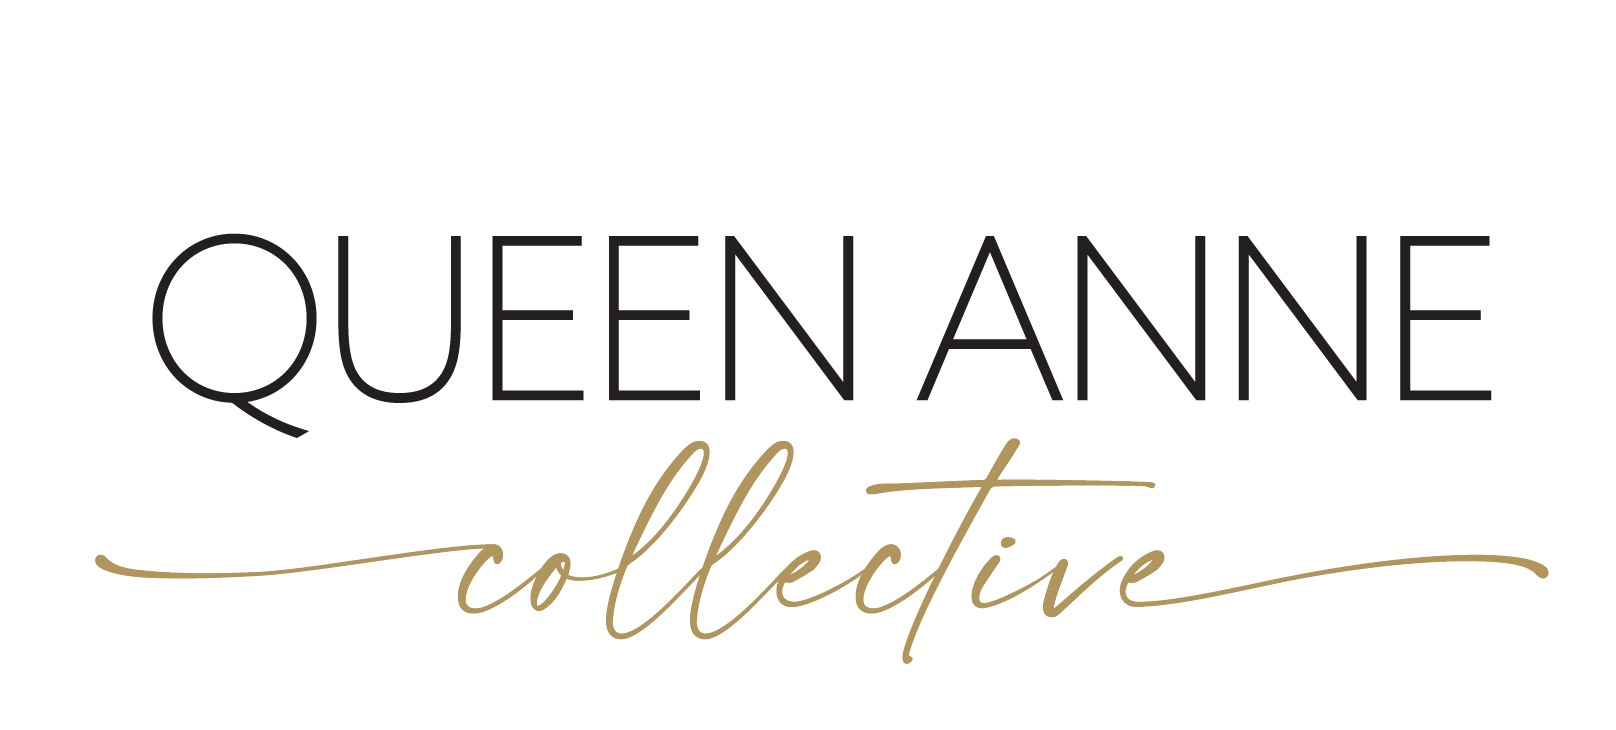 QueenAnneCollective_logo